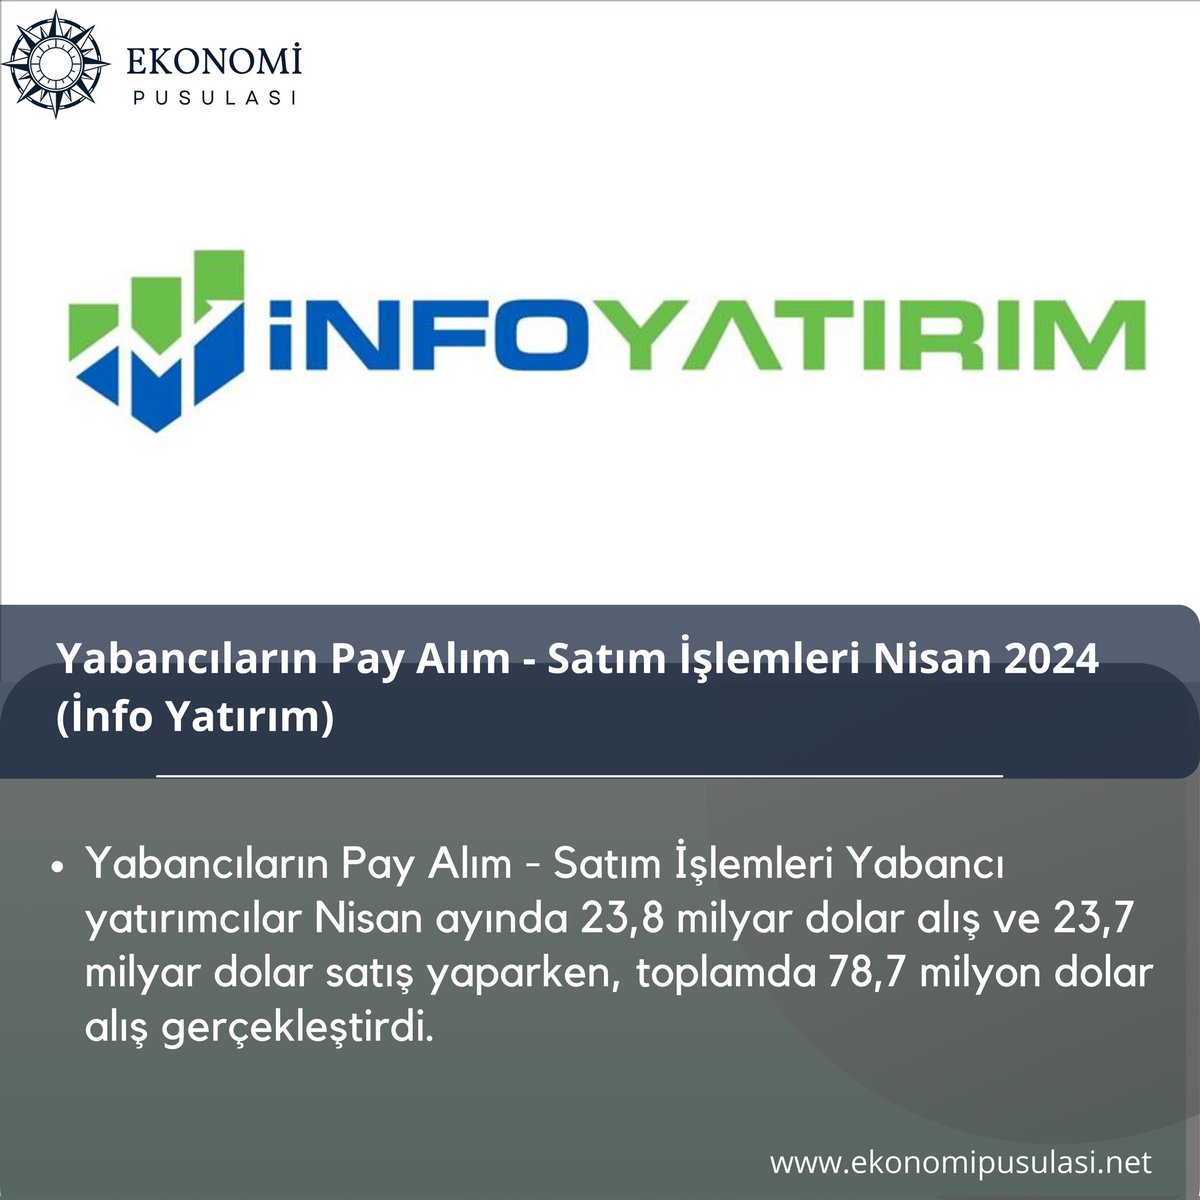 Info yatırım son durum🚨 #DolarTL #enflasyon #YATIRIM #piyasa #DunyaNews #haberler #forextrader